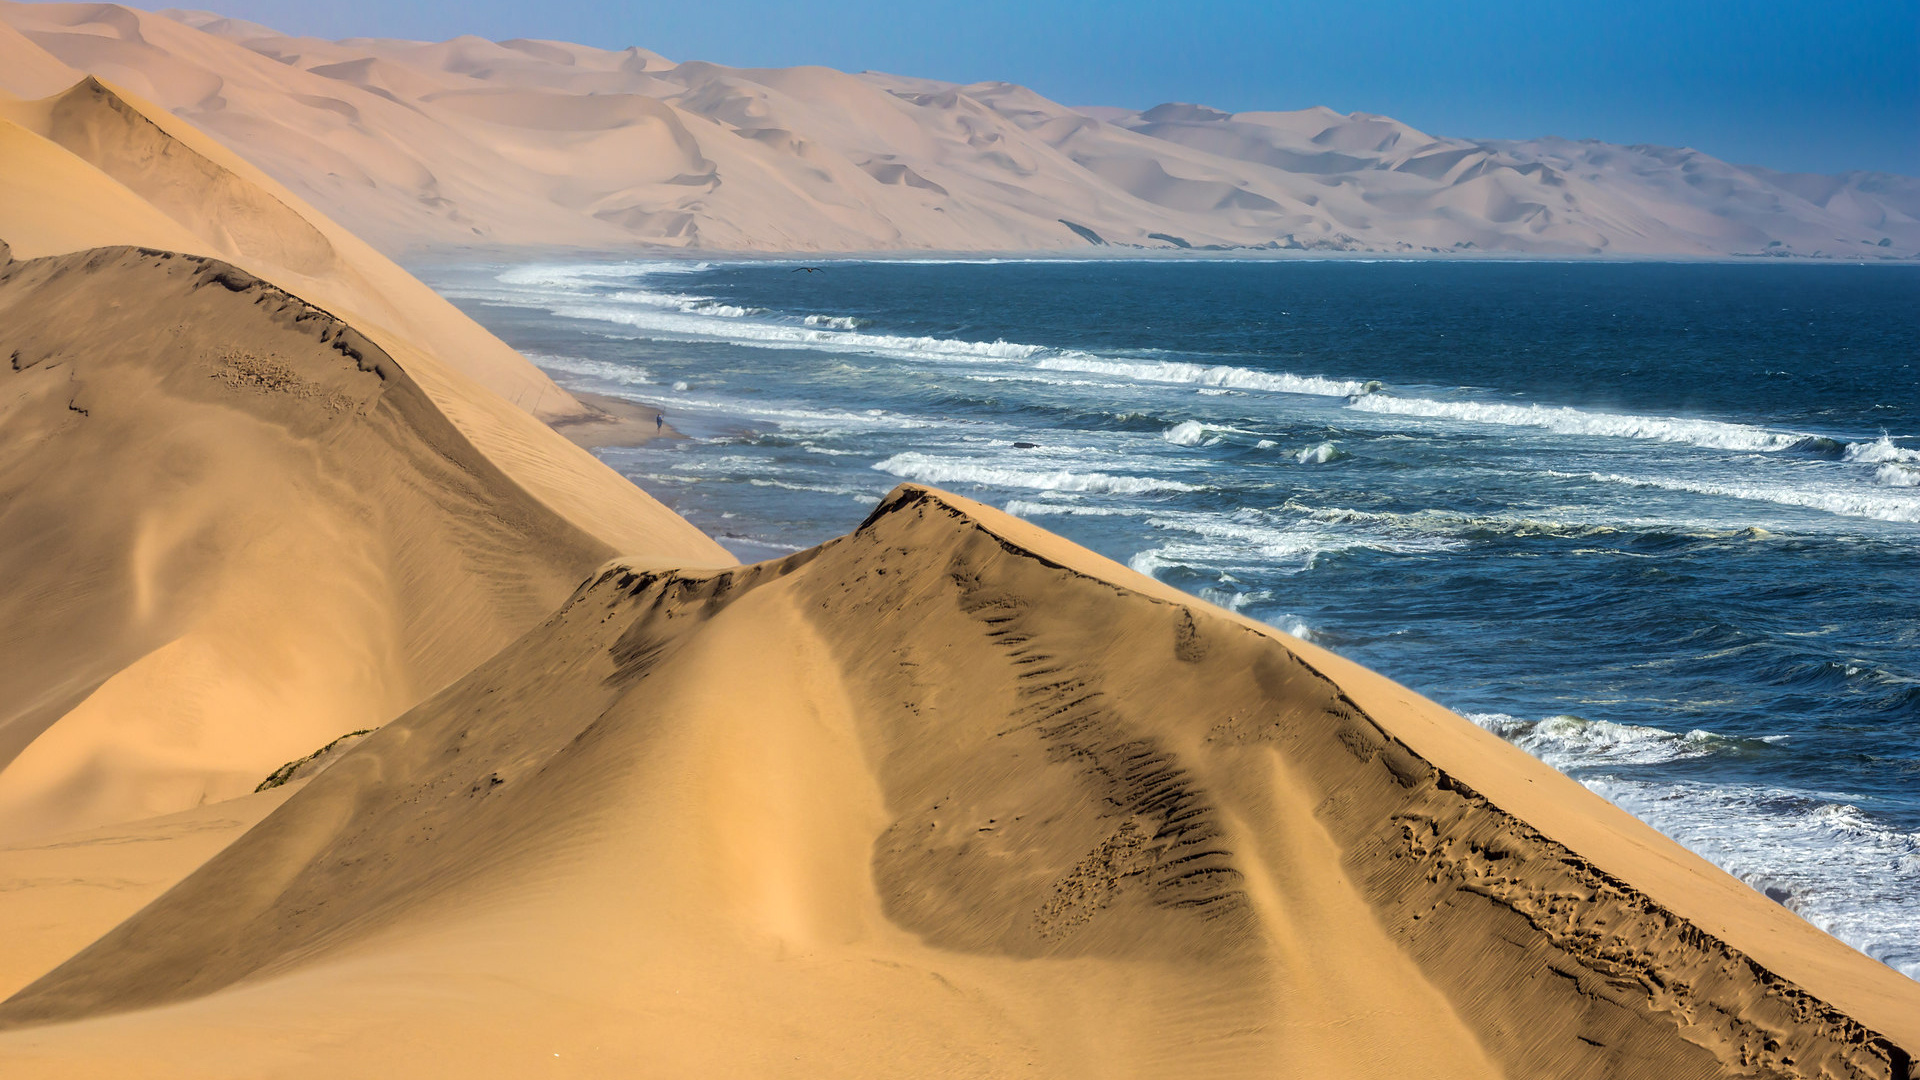 Namibia dune landscape, Desert beauty, Ocean views, Serene sand, 1920x1080 Full HD Desktop